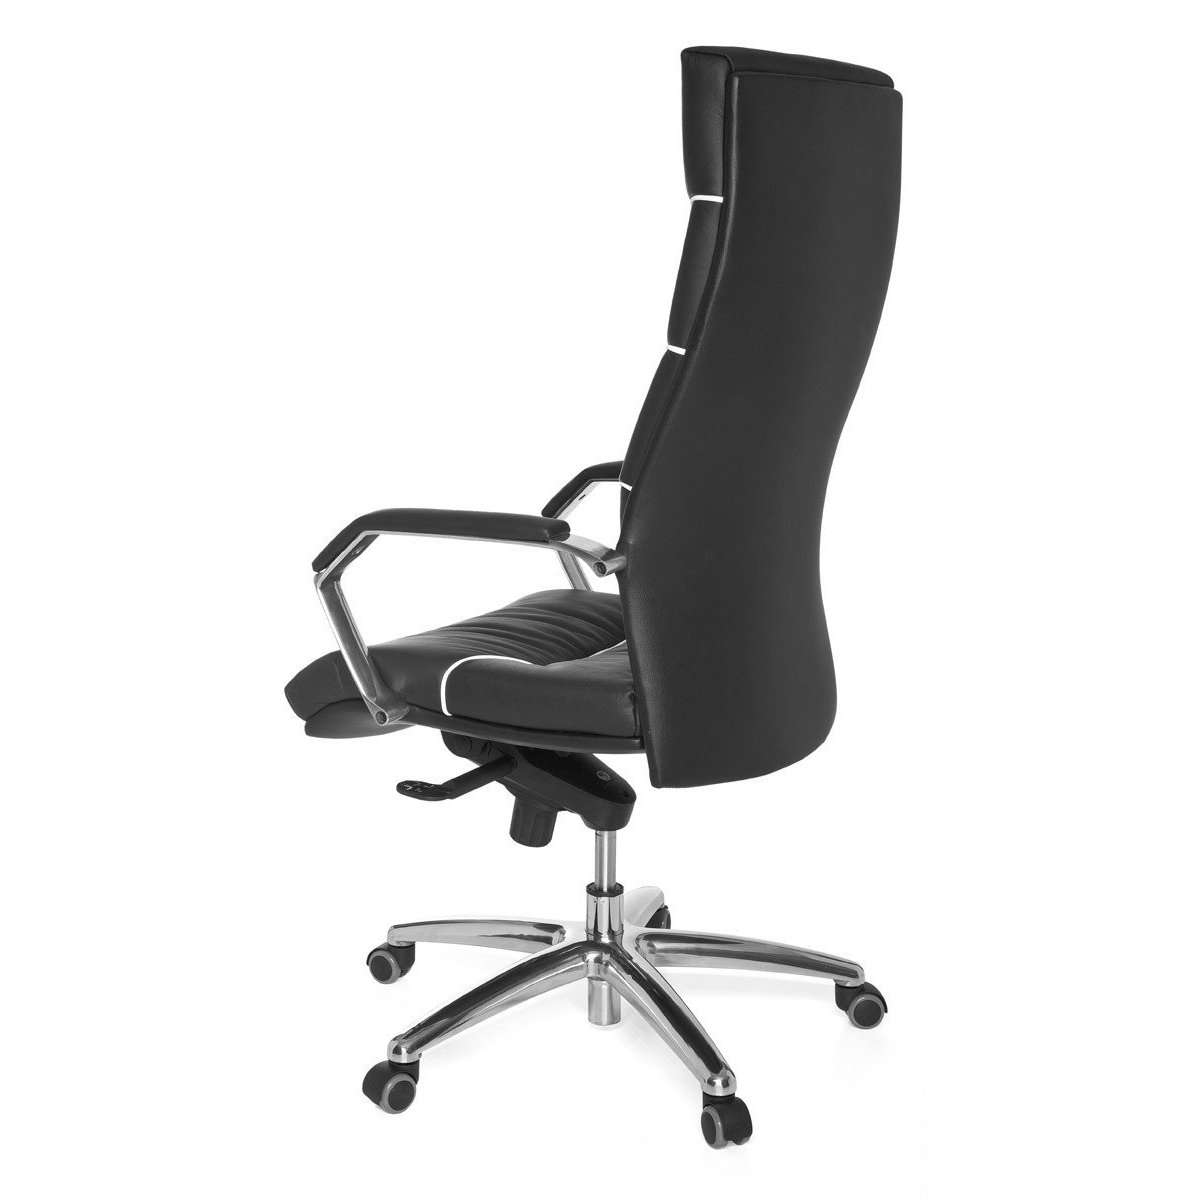 Chaise de bureau en cuir Olinville de Nancy - Chaises de bureau ergonomiques - Chaise de bureau pour adultes